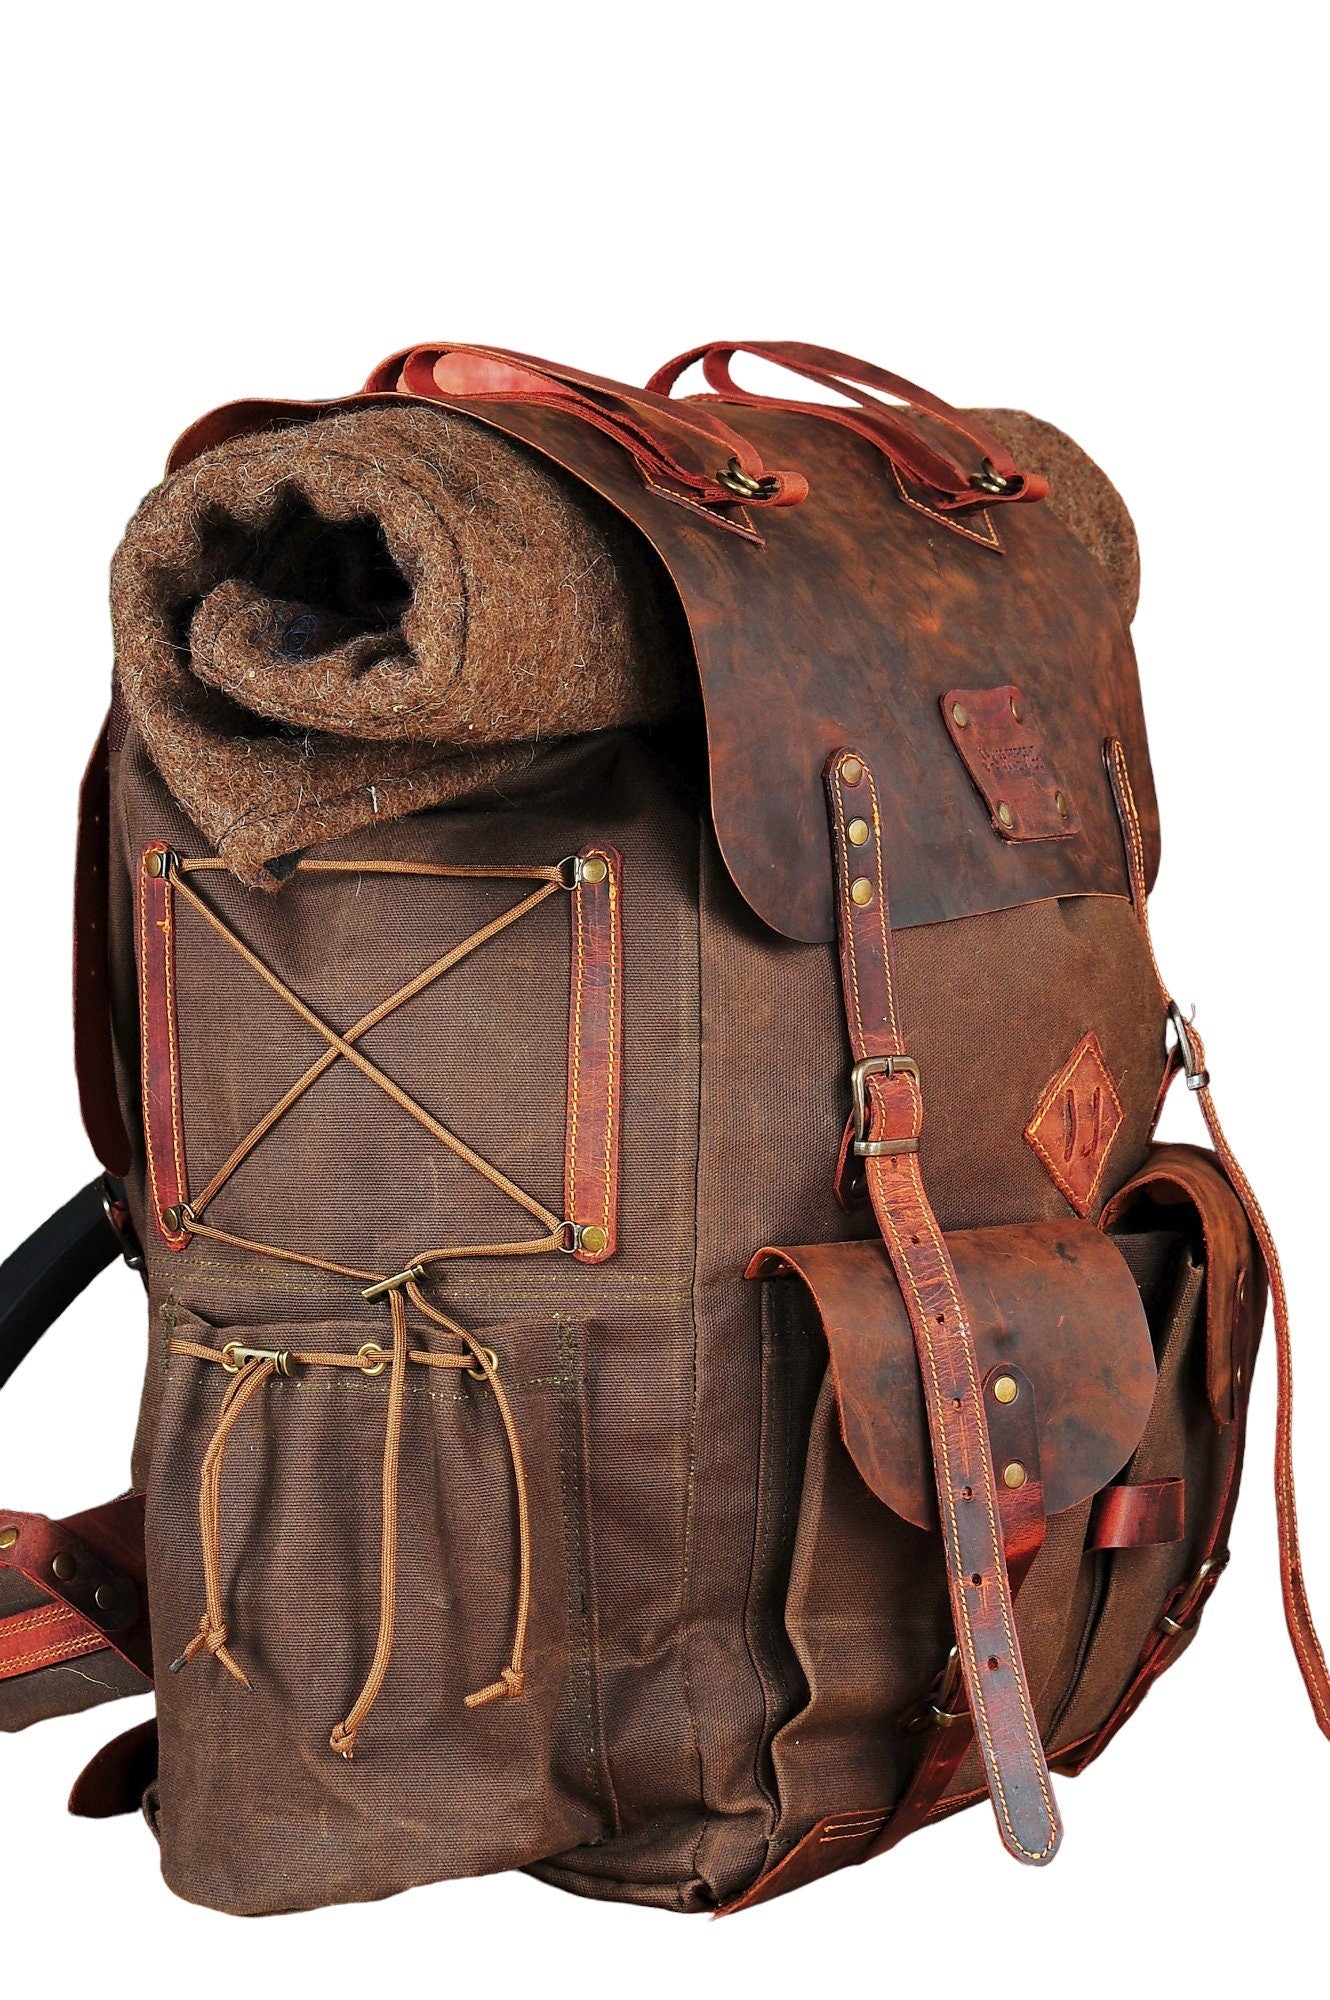 Hiking | Hiking Backpack | Hiking Bag | Leather and Canvas Backpack | Leather | Canvas | Camping Backpack | Bushcraft  | Camping | Rucksack bushcraft - camping - hiking backpack 99percenthandmade   